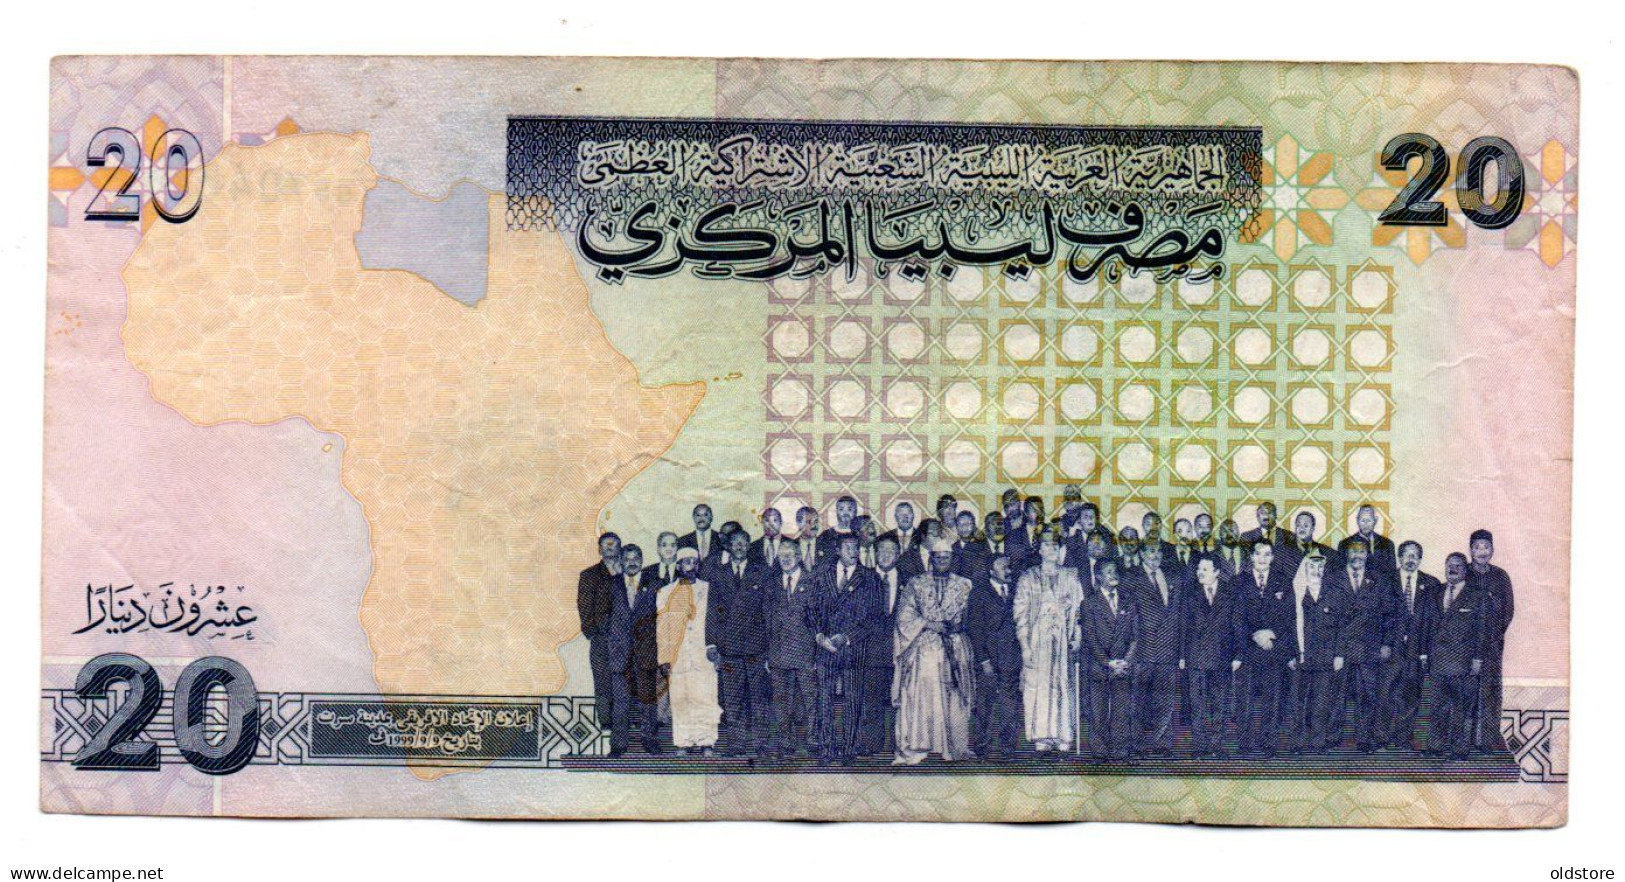 Libya Banknotes - 20 Dinars - Commemorative Banknotes - ND 2009  #3 - Libya